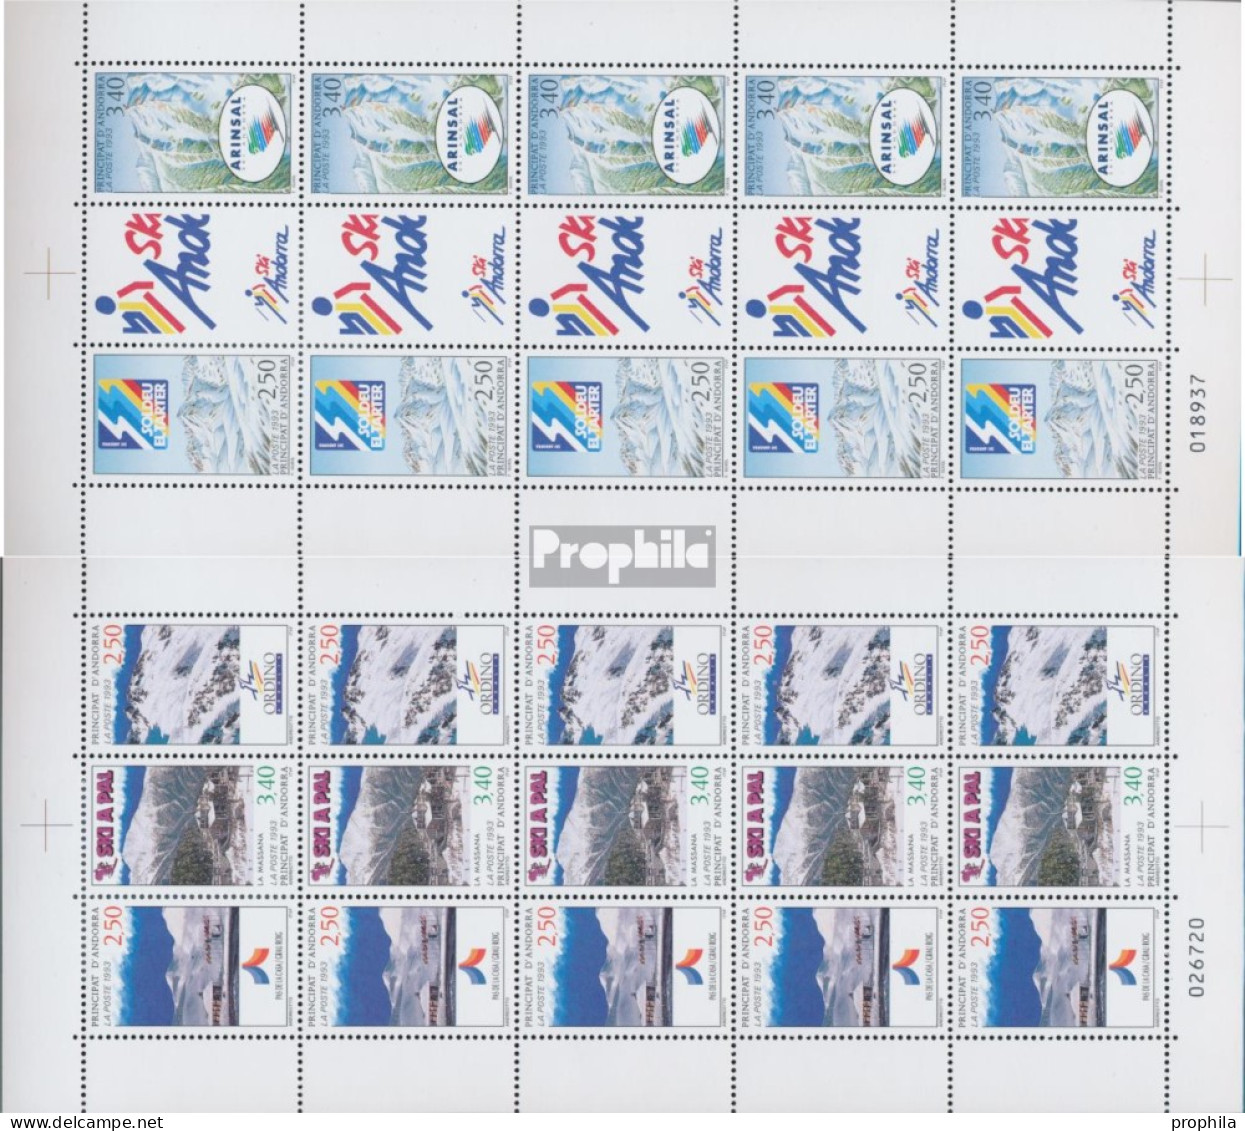 Andorra - Französische Post 446+449,447-448+450 Kleinbogen (kompl.Ausg.) Postfrisch 1993 Skigebiete - Ungebraucht